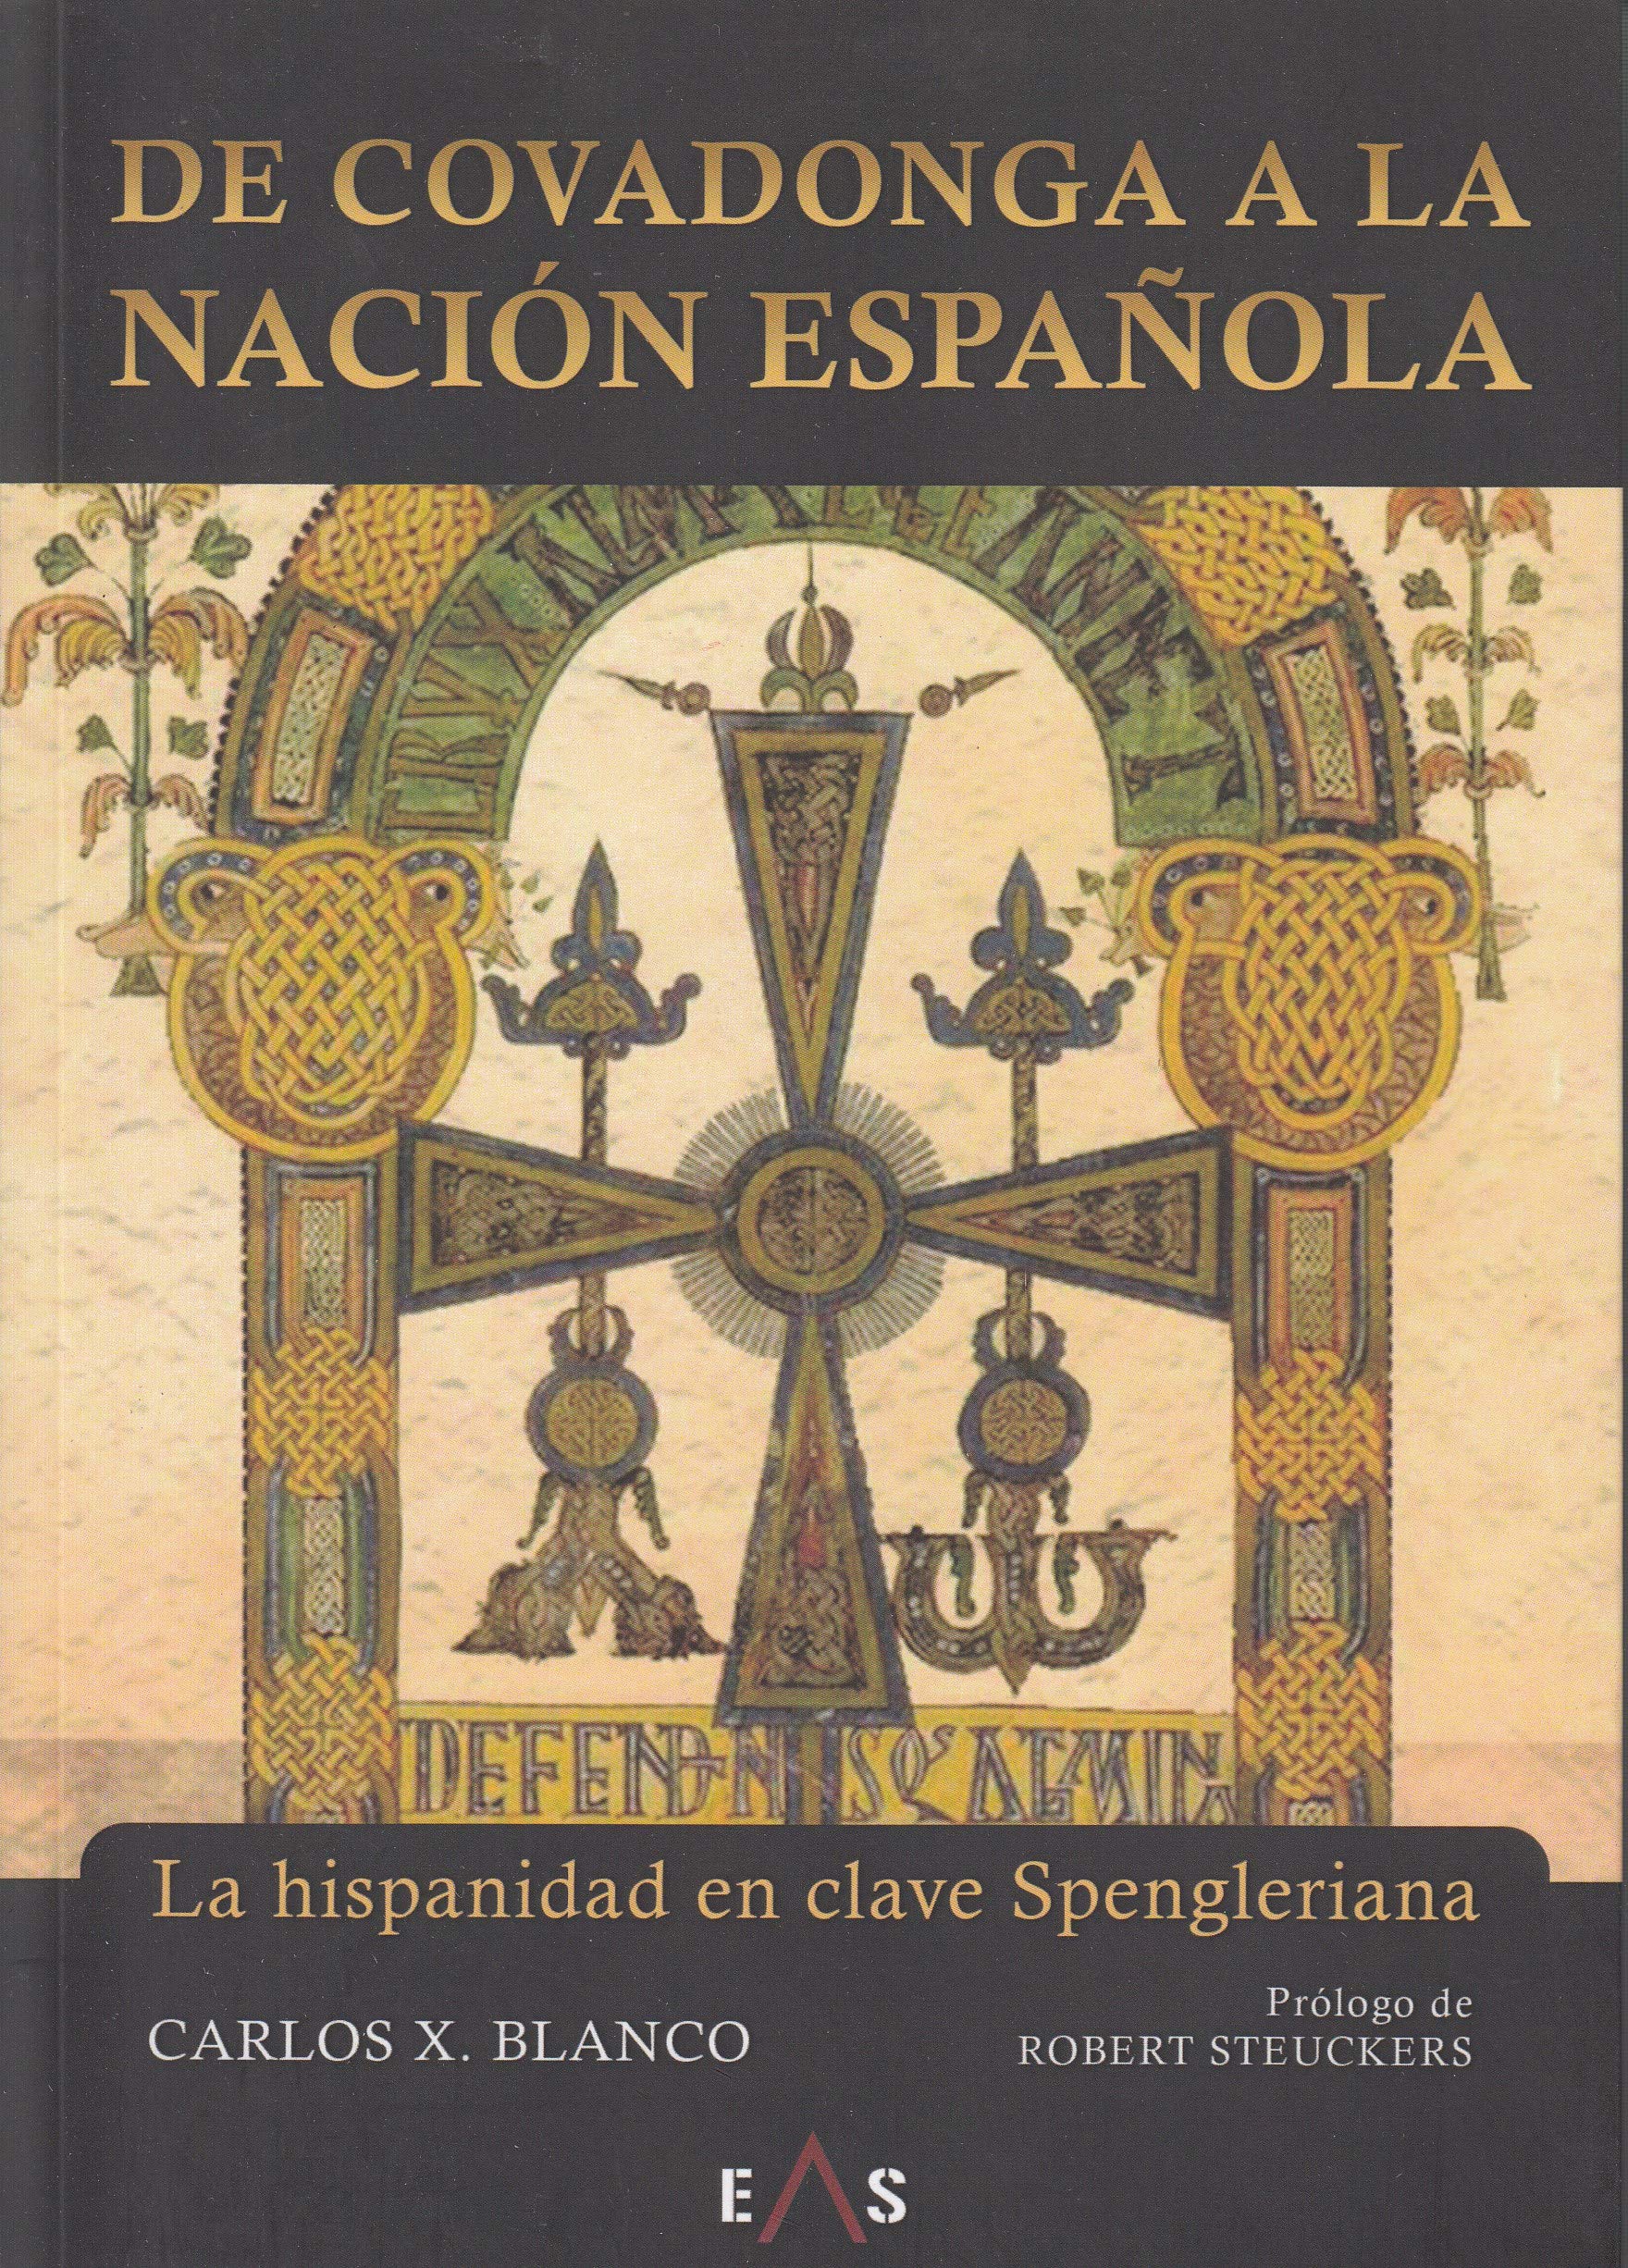 De Covadonga a la nación española: La hispanidad en clave spengleriana, de Carlos X. Blanco